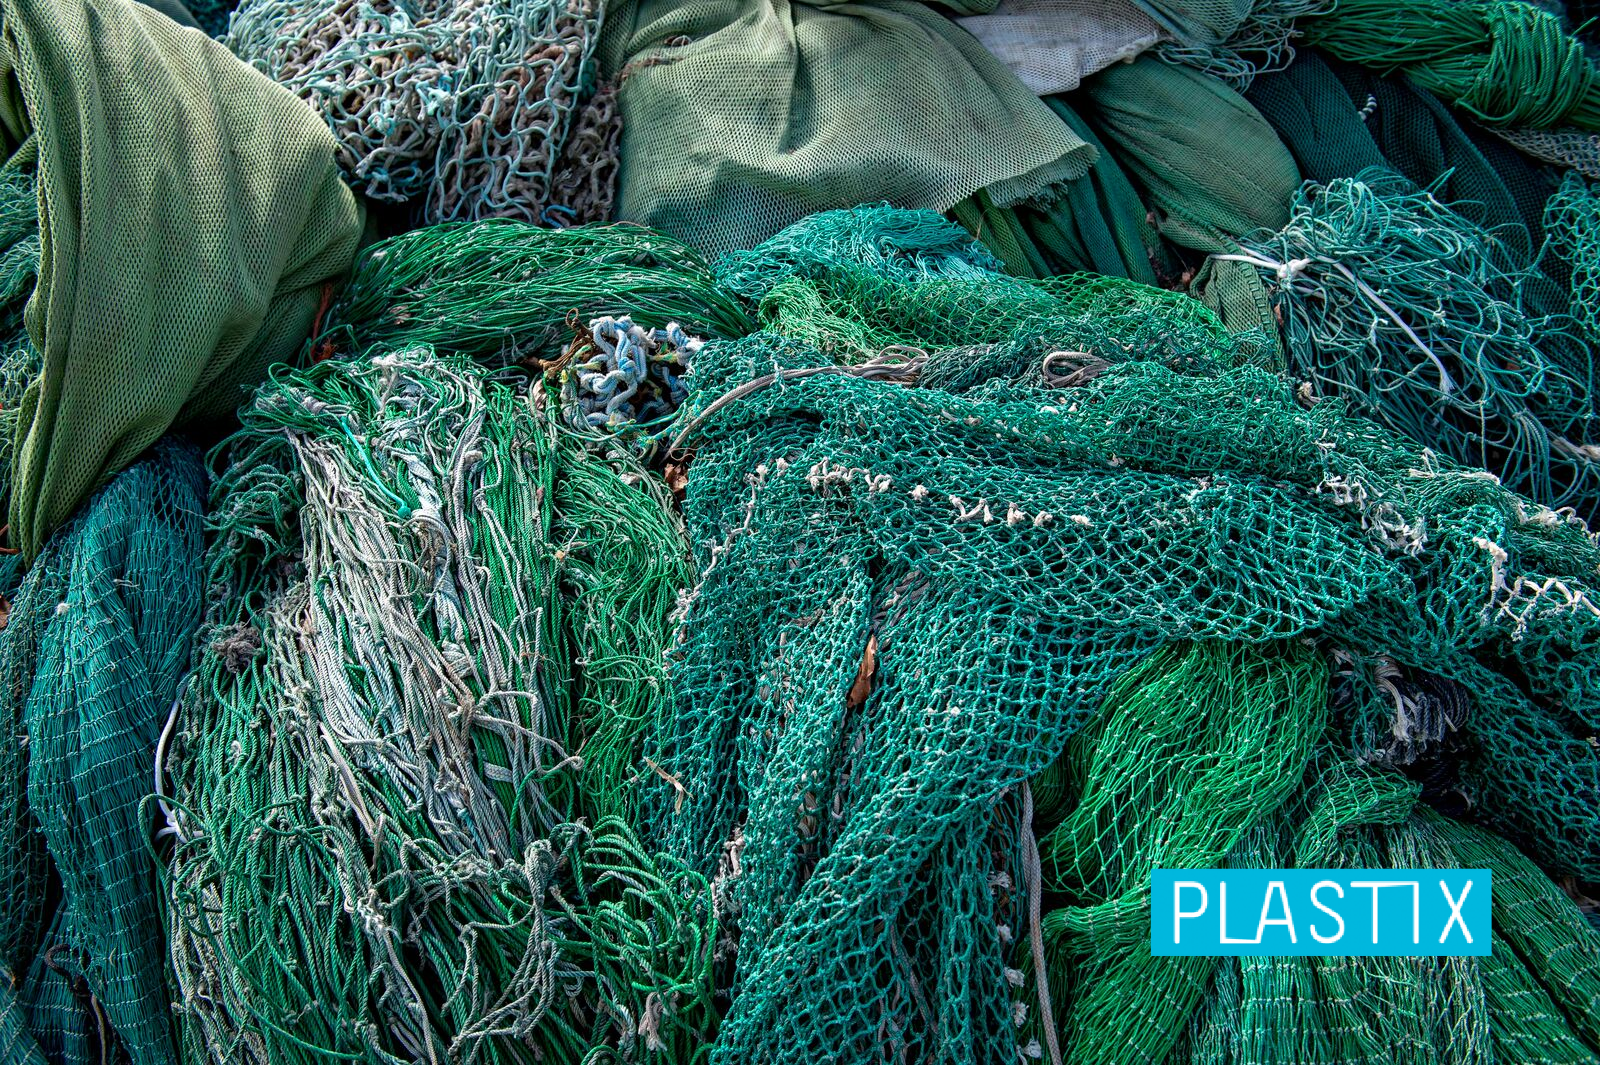 fishnets with plastix logo